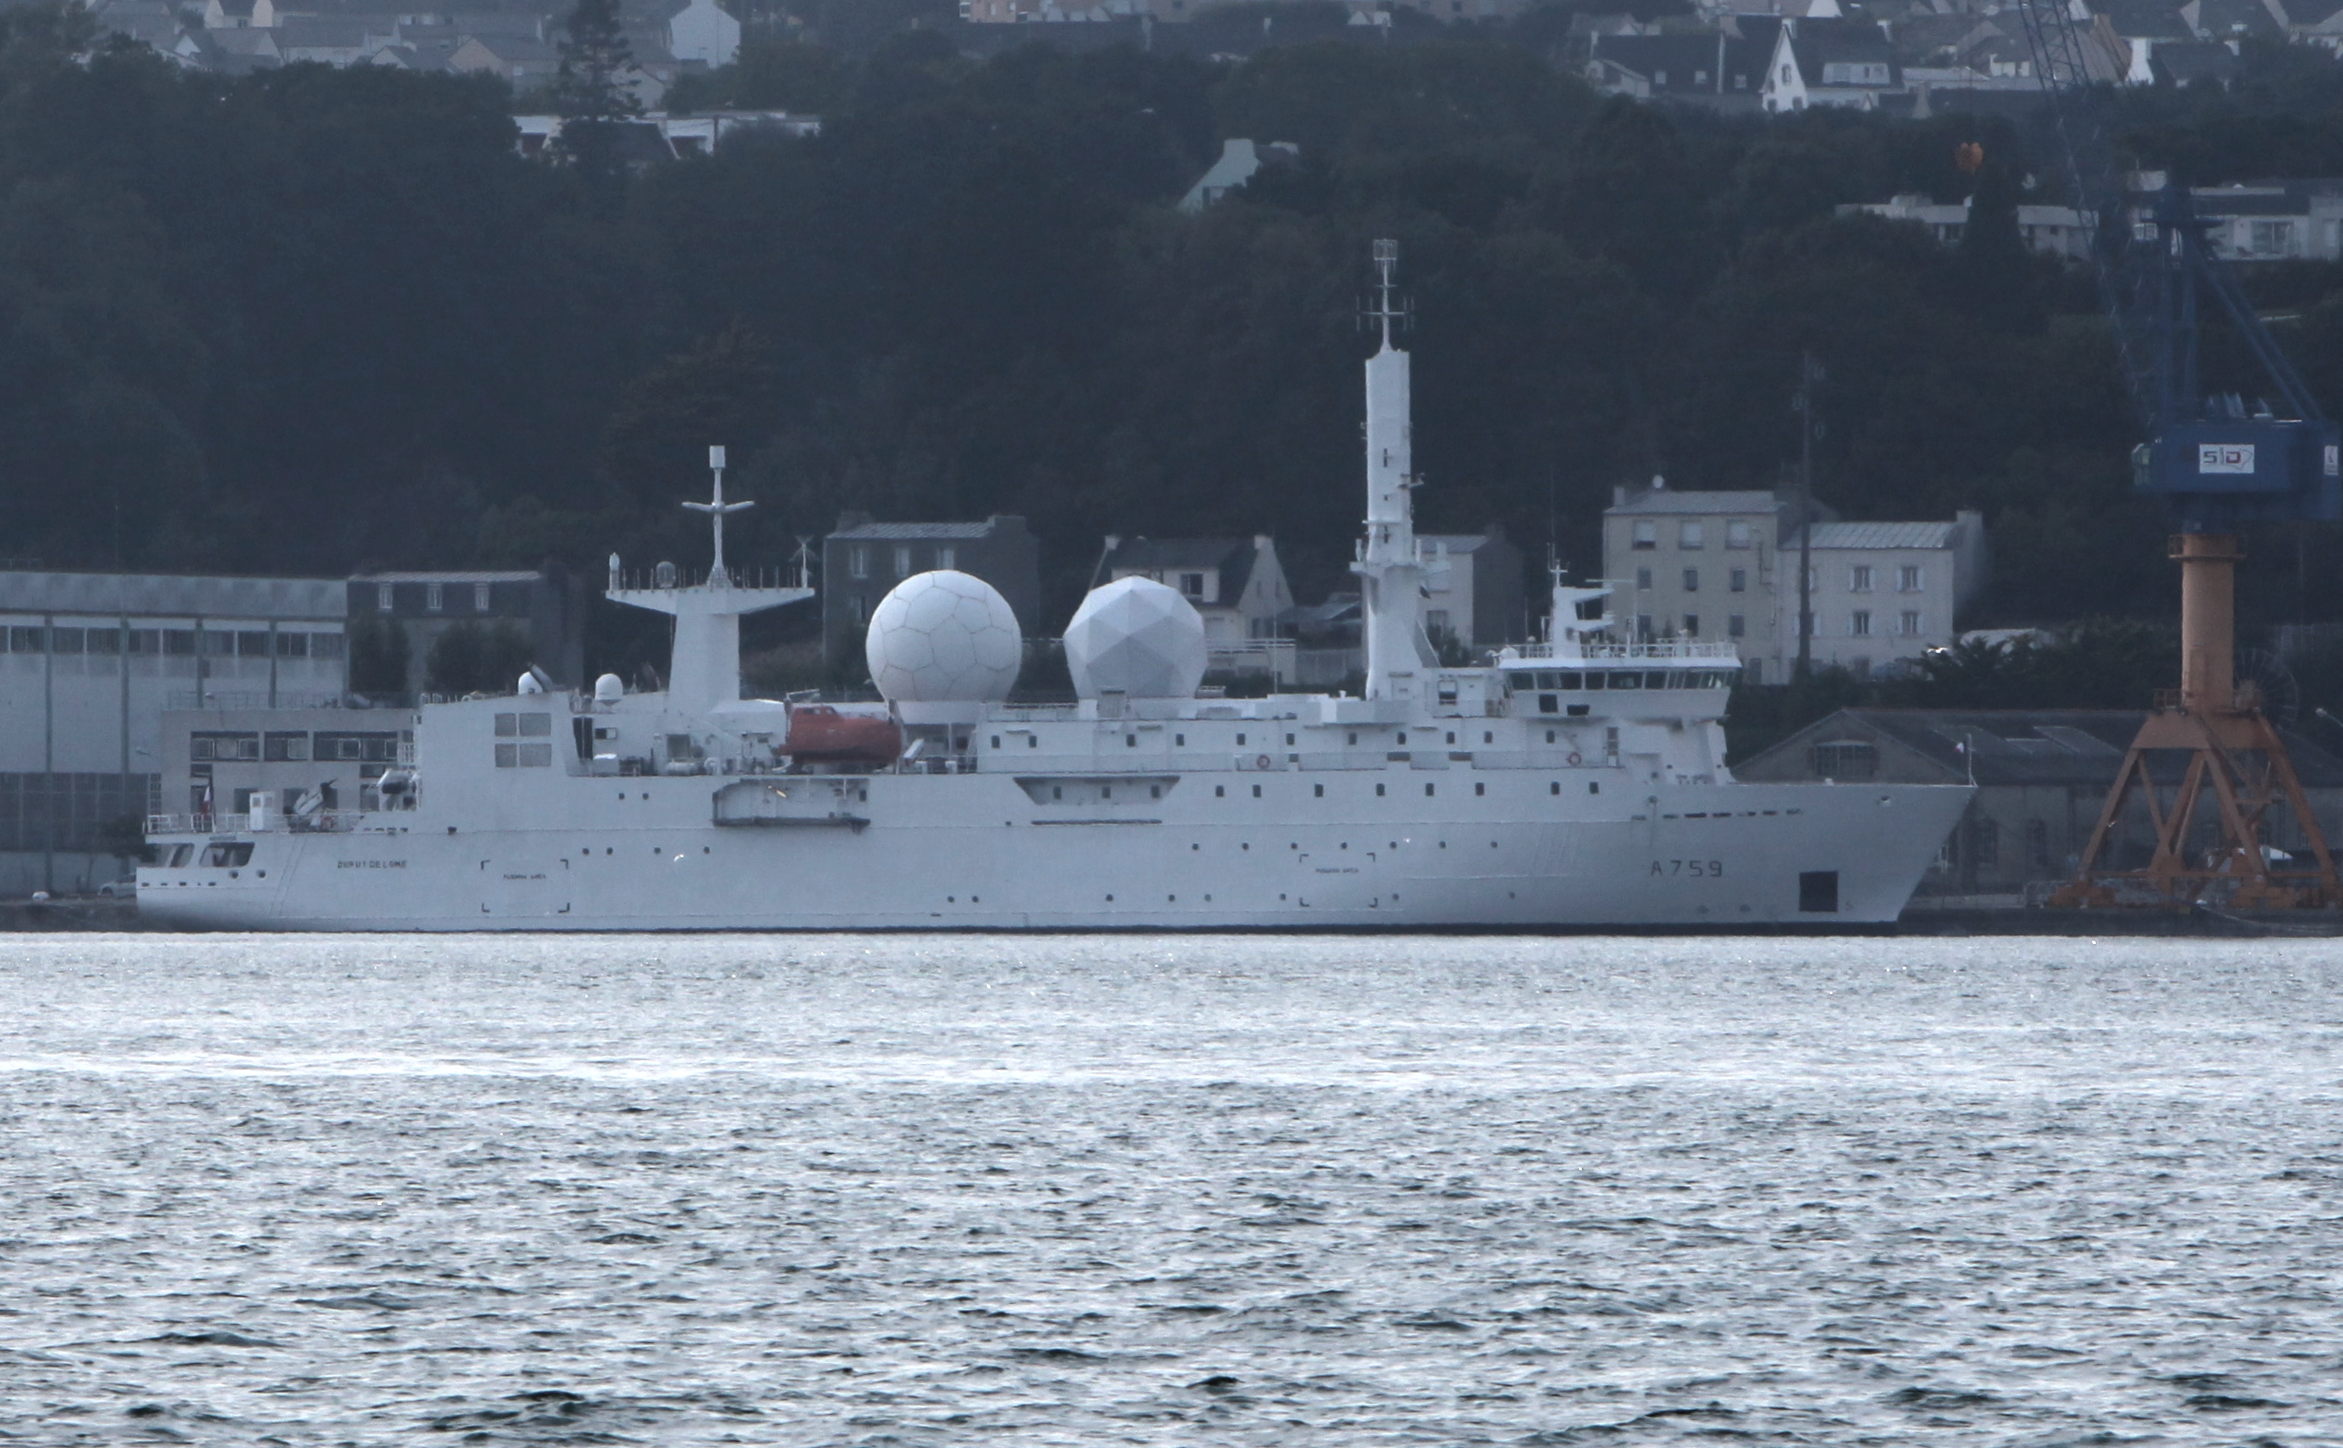 Le navire de renseignement électronique Dupuy-de-Lômedans le port de Brest